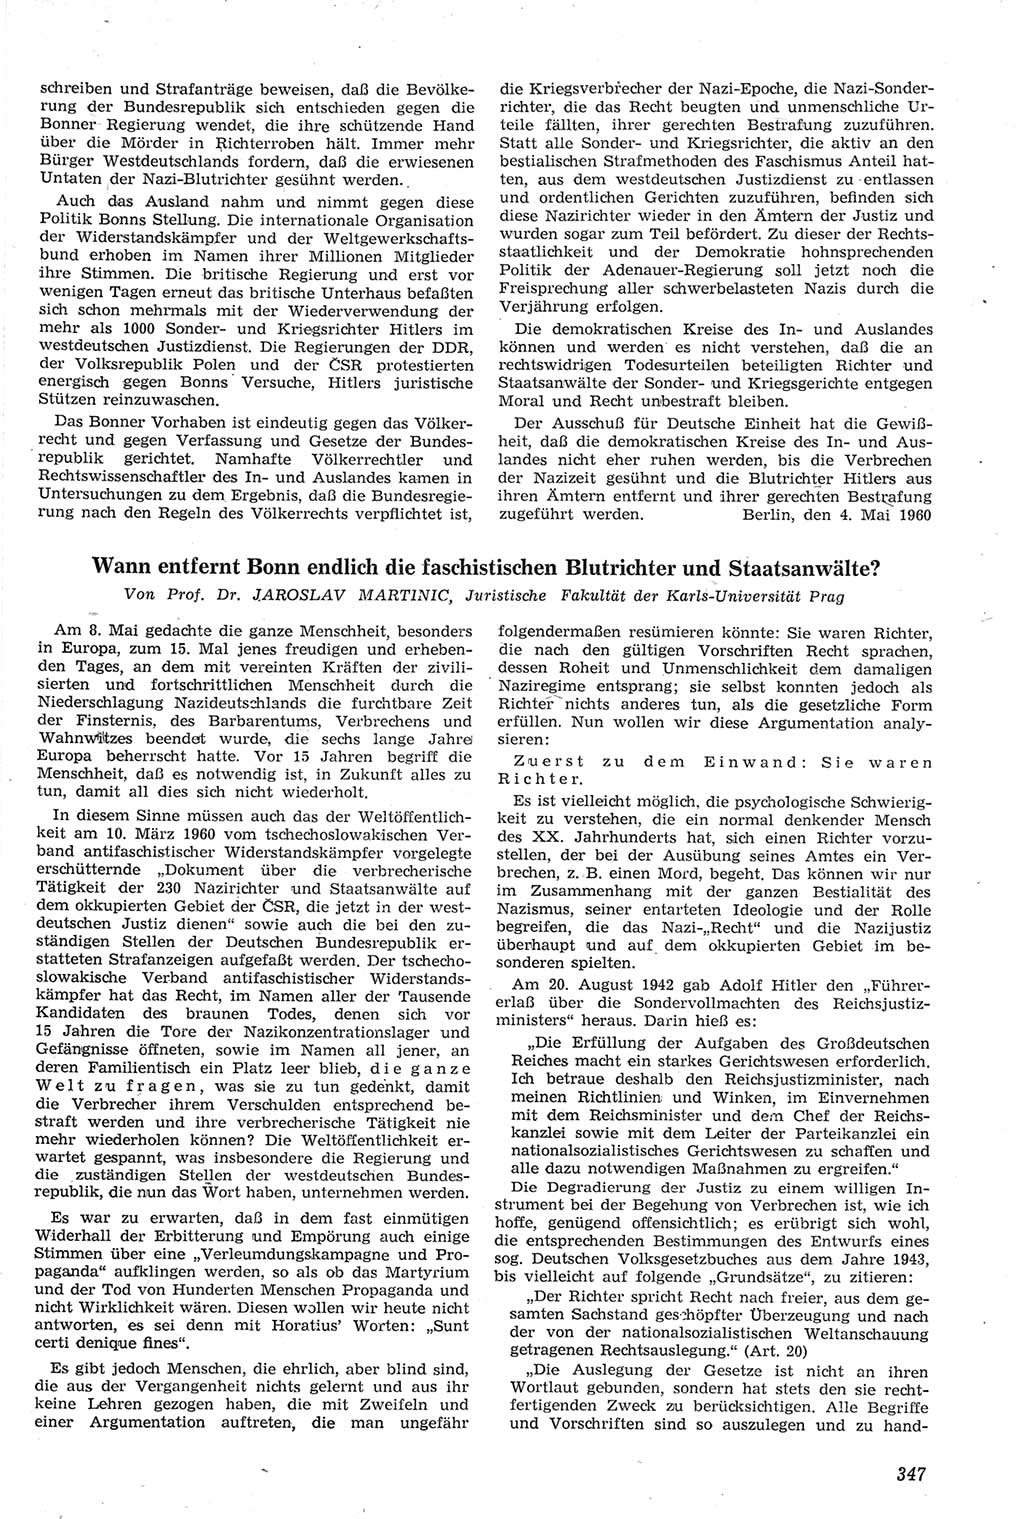 Neue Justiz (NJ), Zeitschrift für Recht und Rechtswissenschaft [Deutsche Demokratische Republik (DDR)], 14. Jahrgang 1960, Seite 347 (NJ DDR 1960, S. 347)